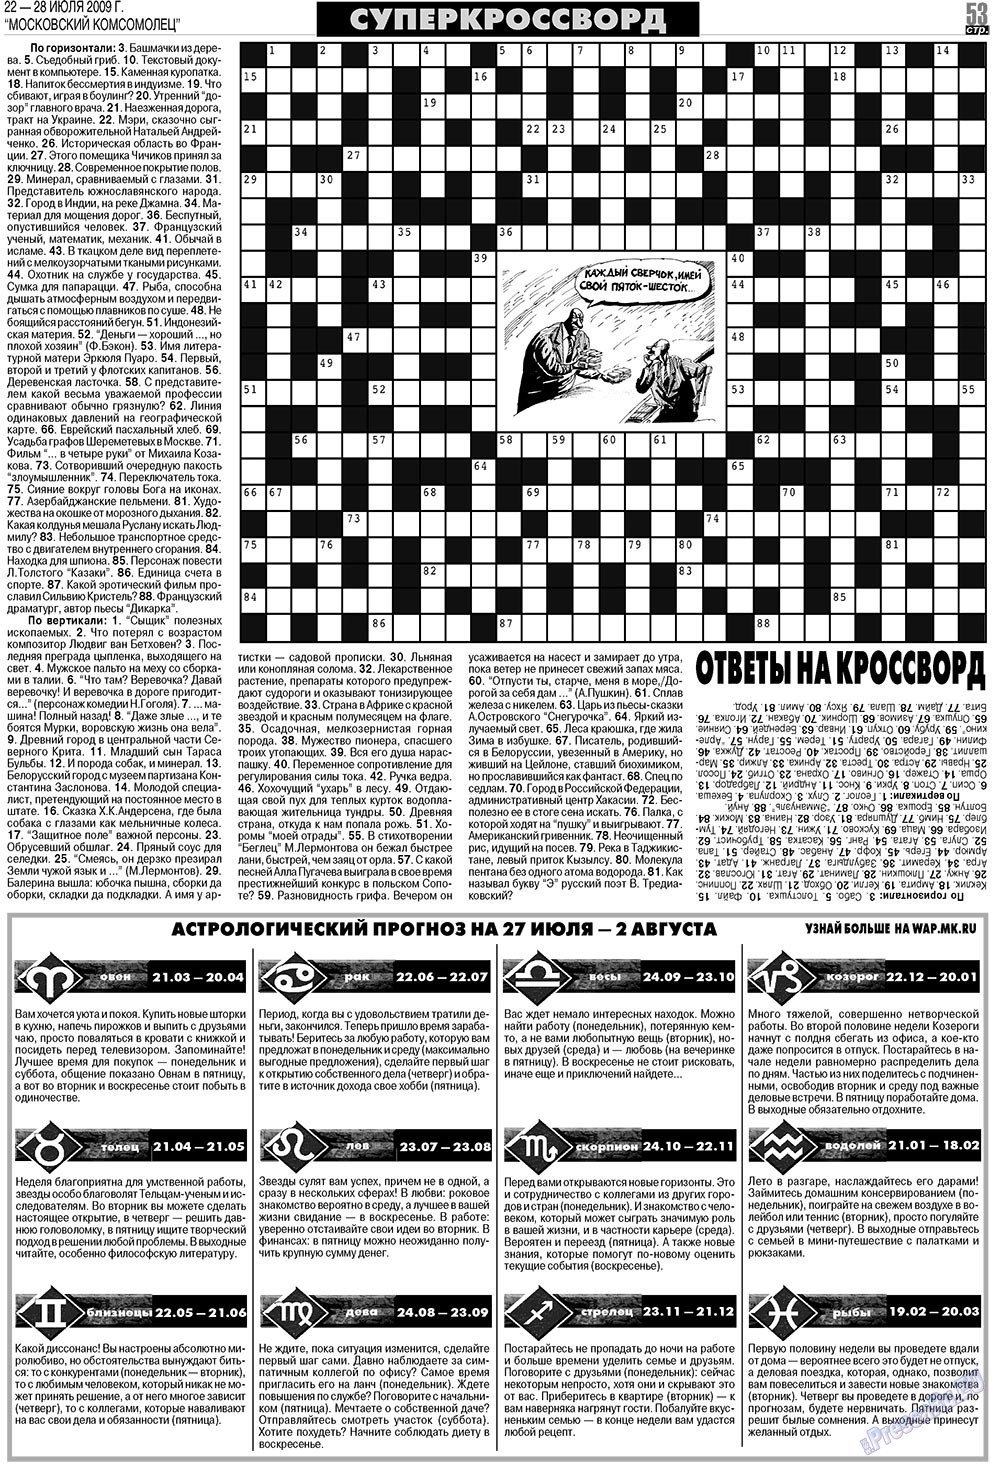 МК Испания, газета. 2009 №30 стр.53